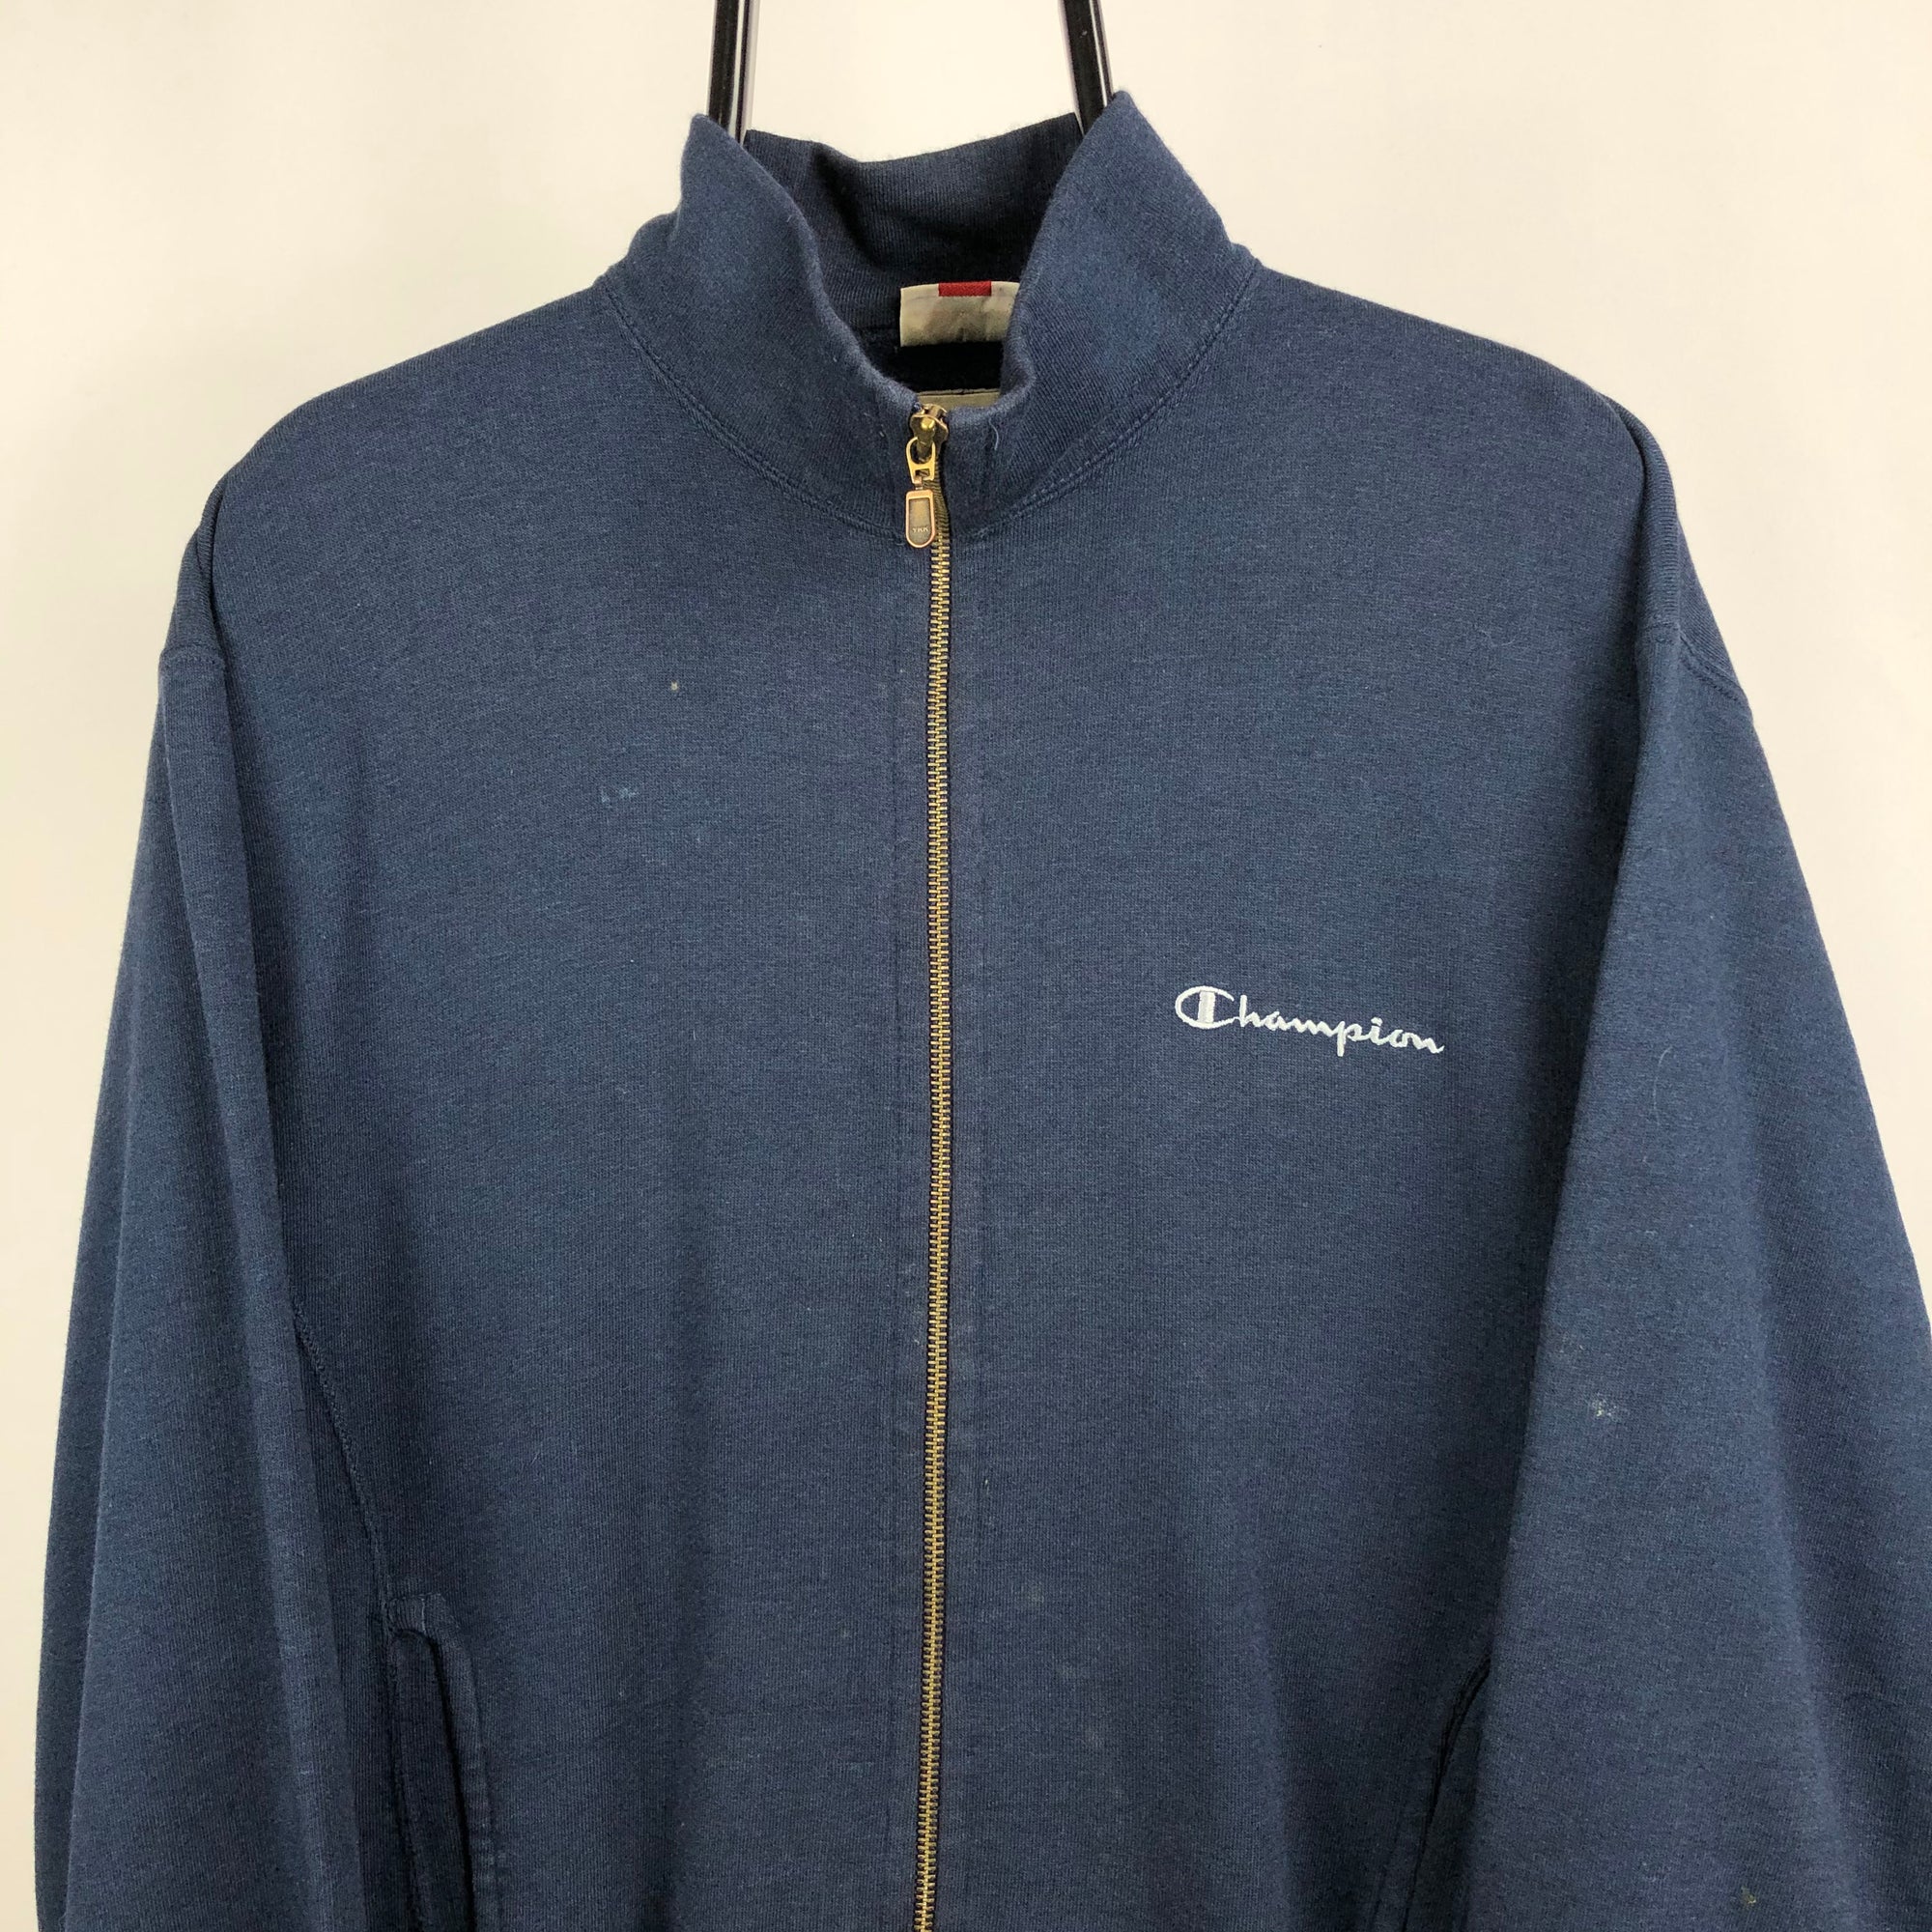 Vintage Champion Zip Sweatshirt in Navy - Men's Large/Women's XL